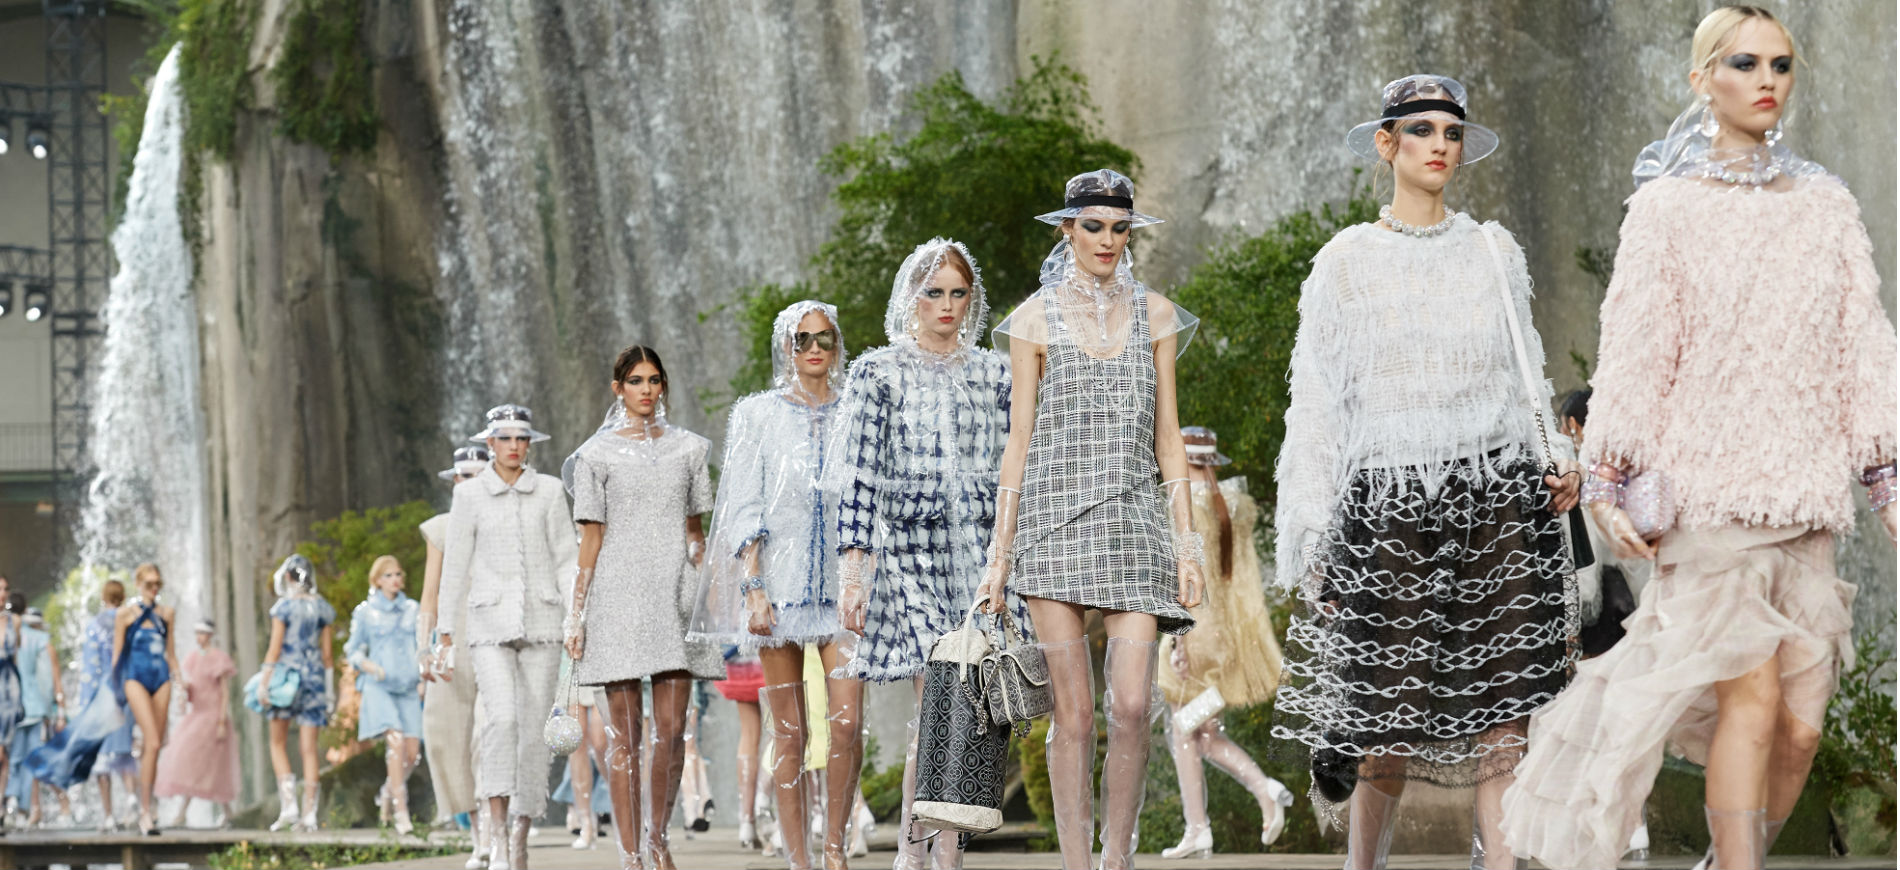 Impermeabile Chanel see through: passerella con modelle durante una sfilata